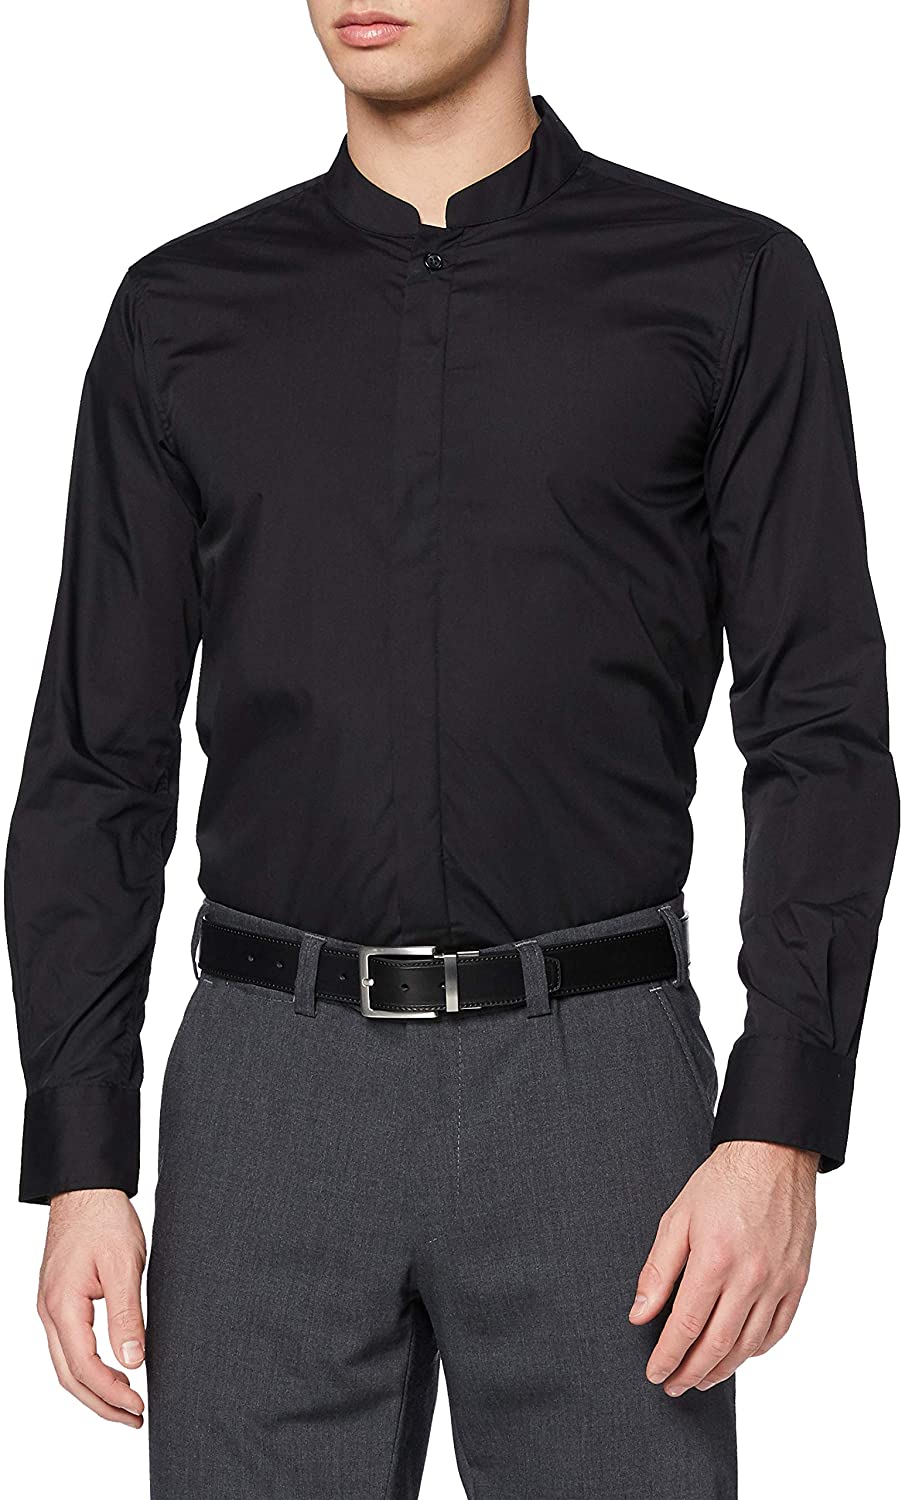 Men's Mandarin Collar Shirt